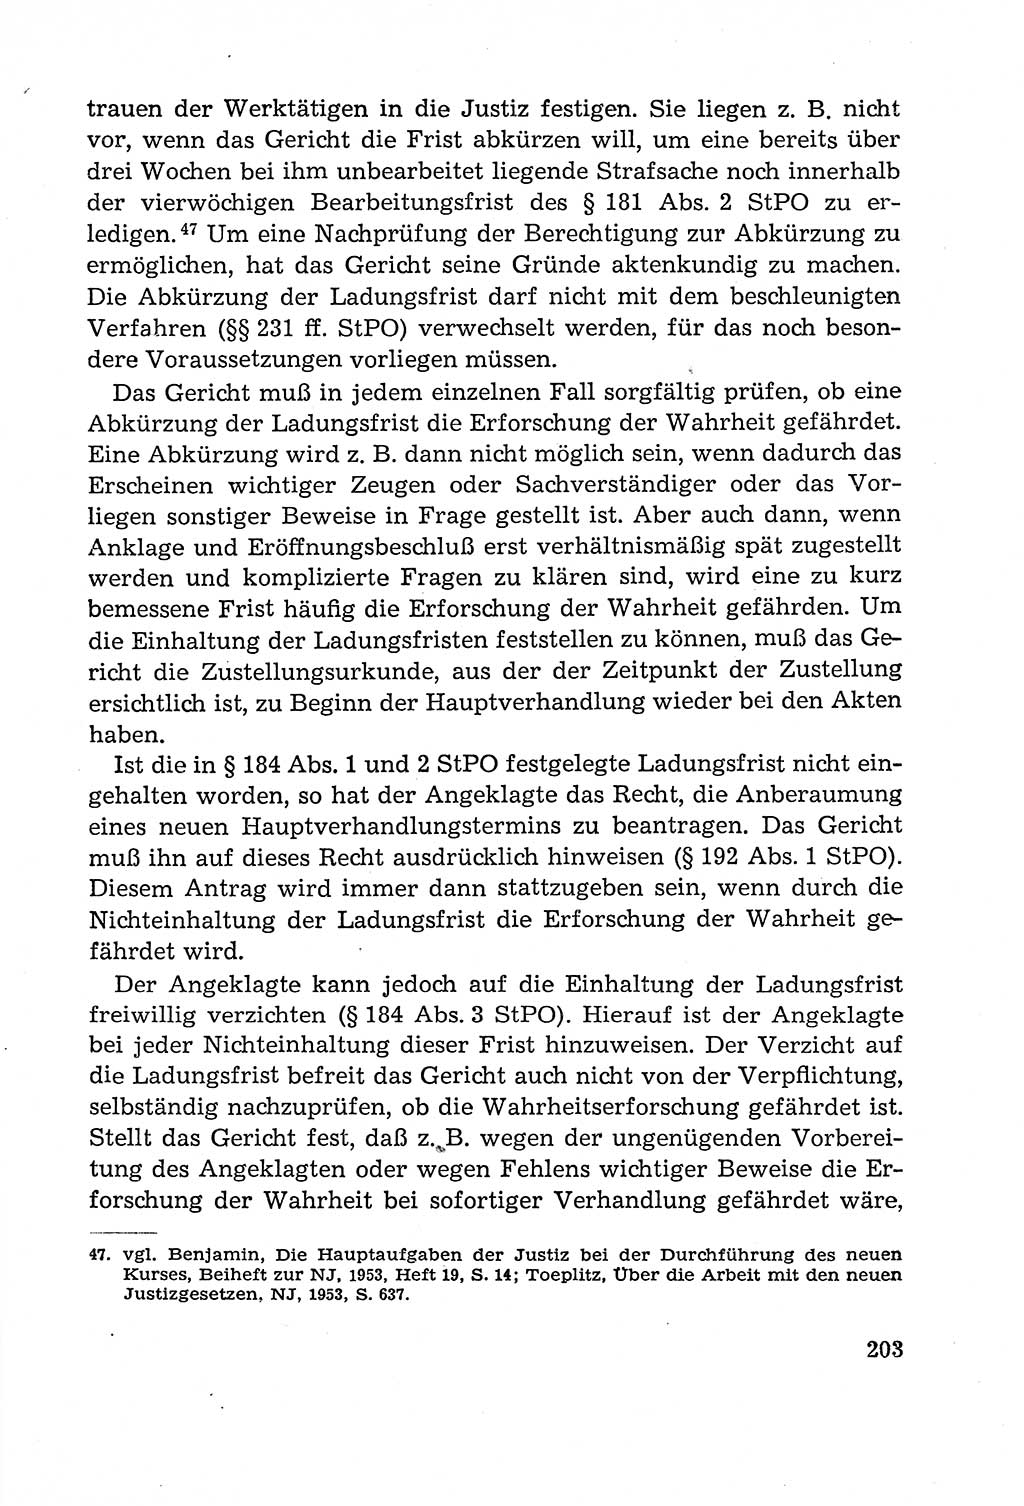 Leitfaden des StrafprozeÃŸrechts der Deutschen Demokratischen Republik (DDR) 1959, Seite 203 (LF StPR DDR 1959, S. 203)